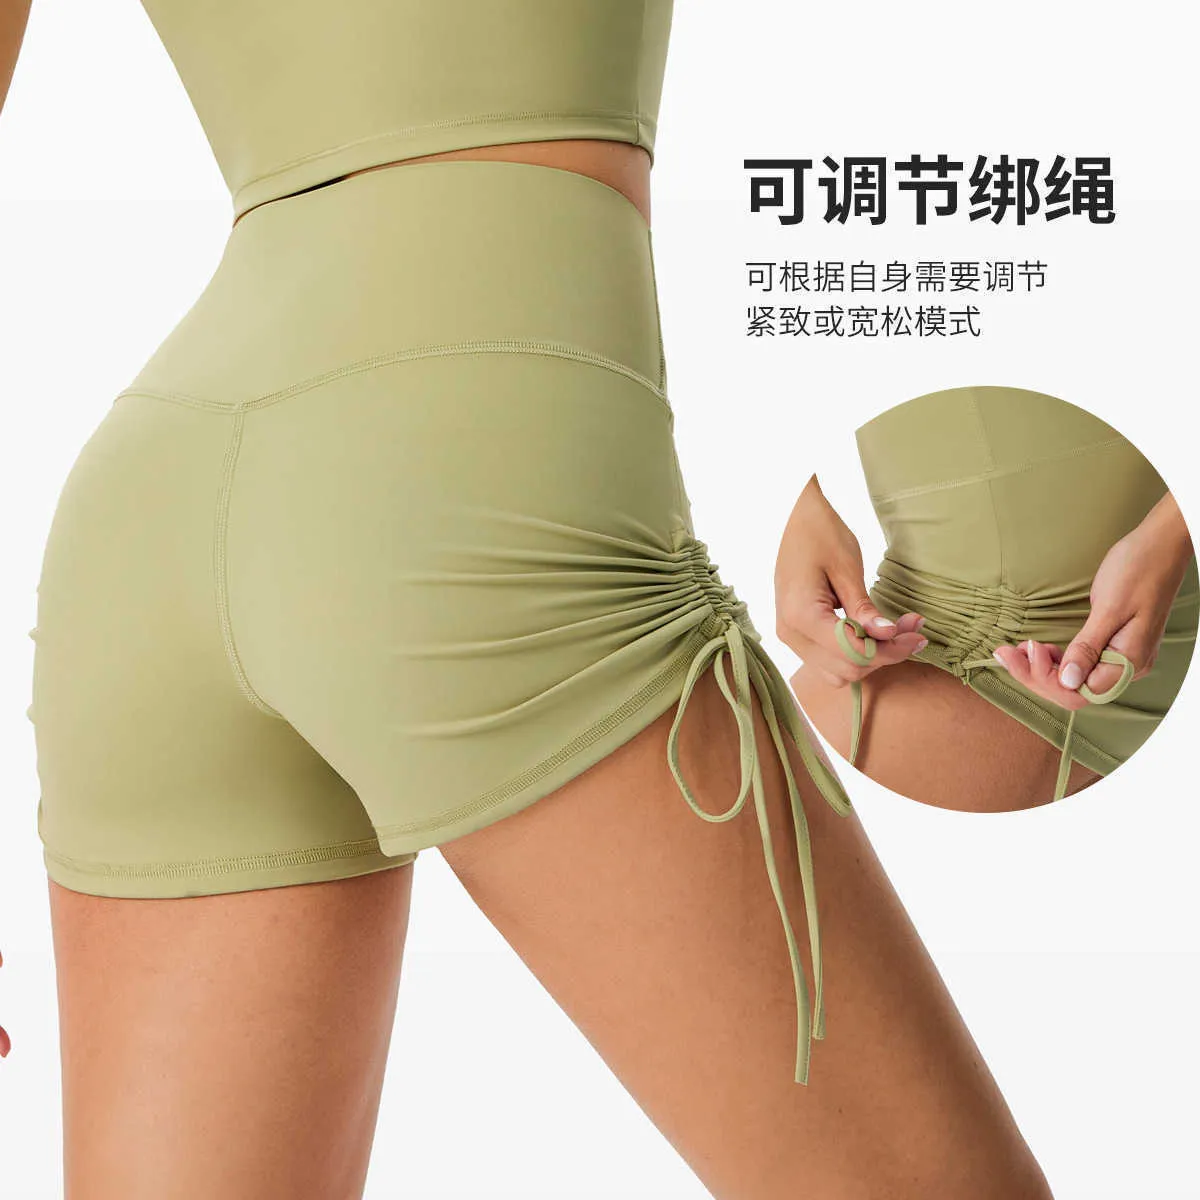 Sport Draw String Peach Yoga Outfits Shorts Bacteriostase Fitness lauft heiße Hosen hohe Taille lässige Unterwäsche weibliche Unterwäsche